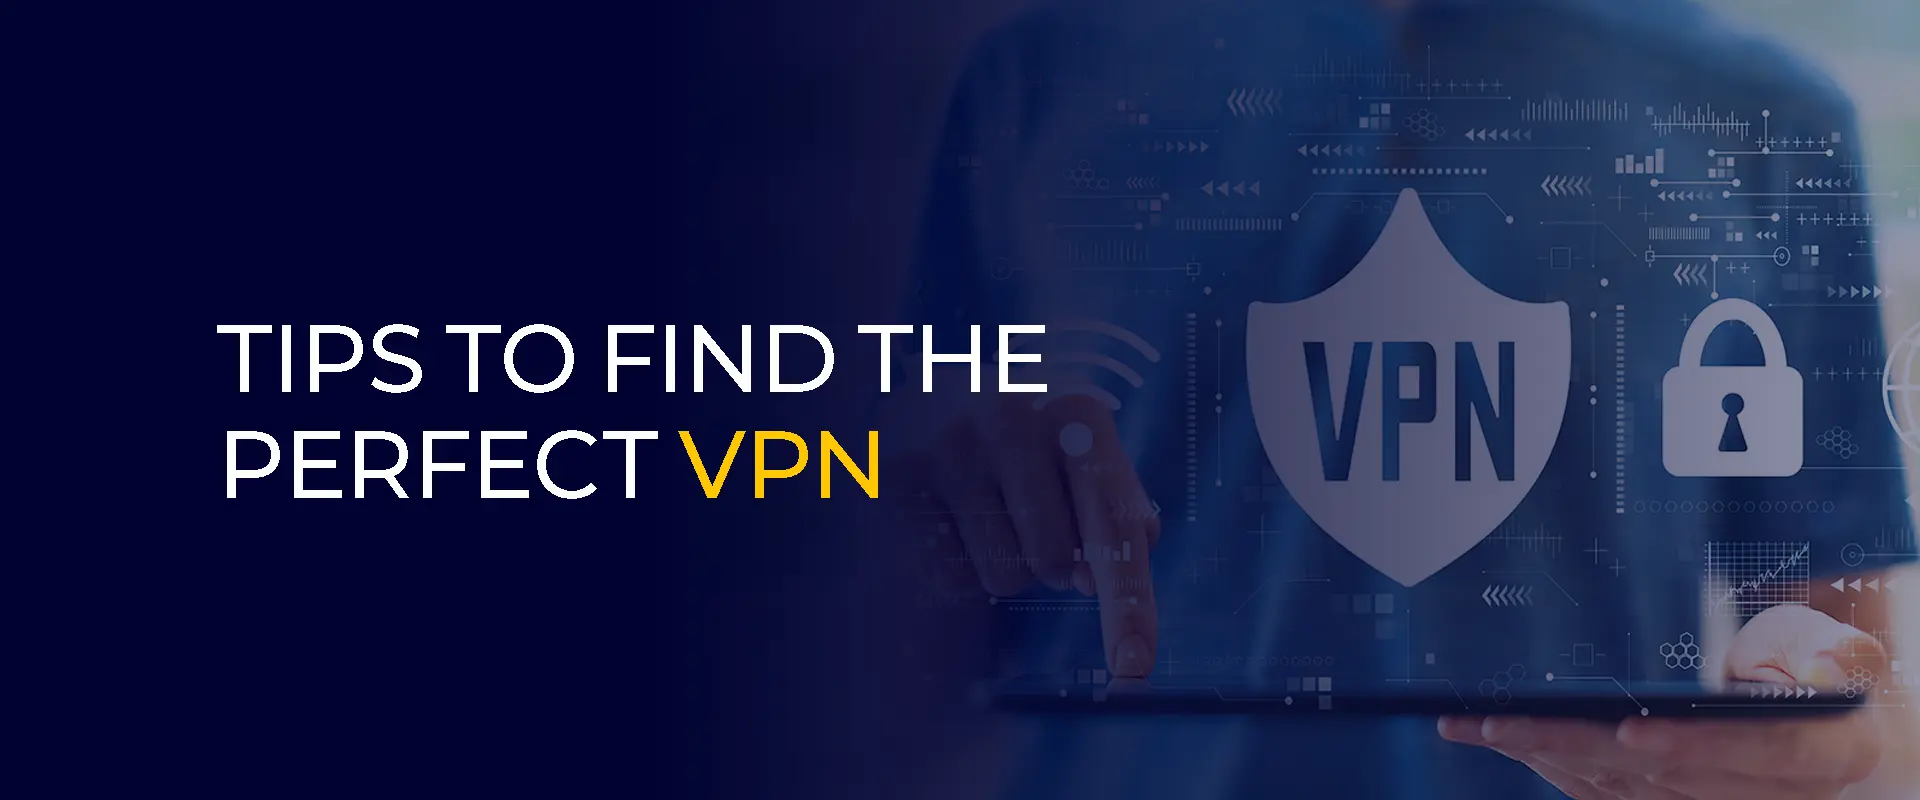 Tips om de perfecte VPN te vinden